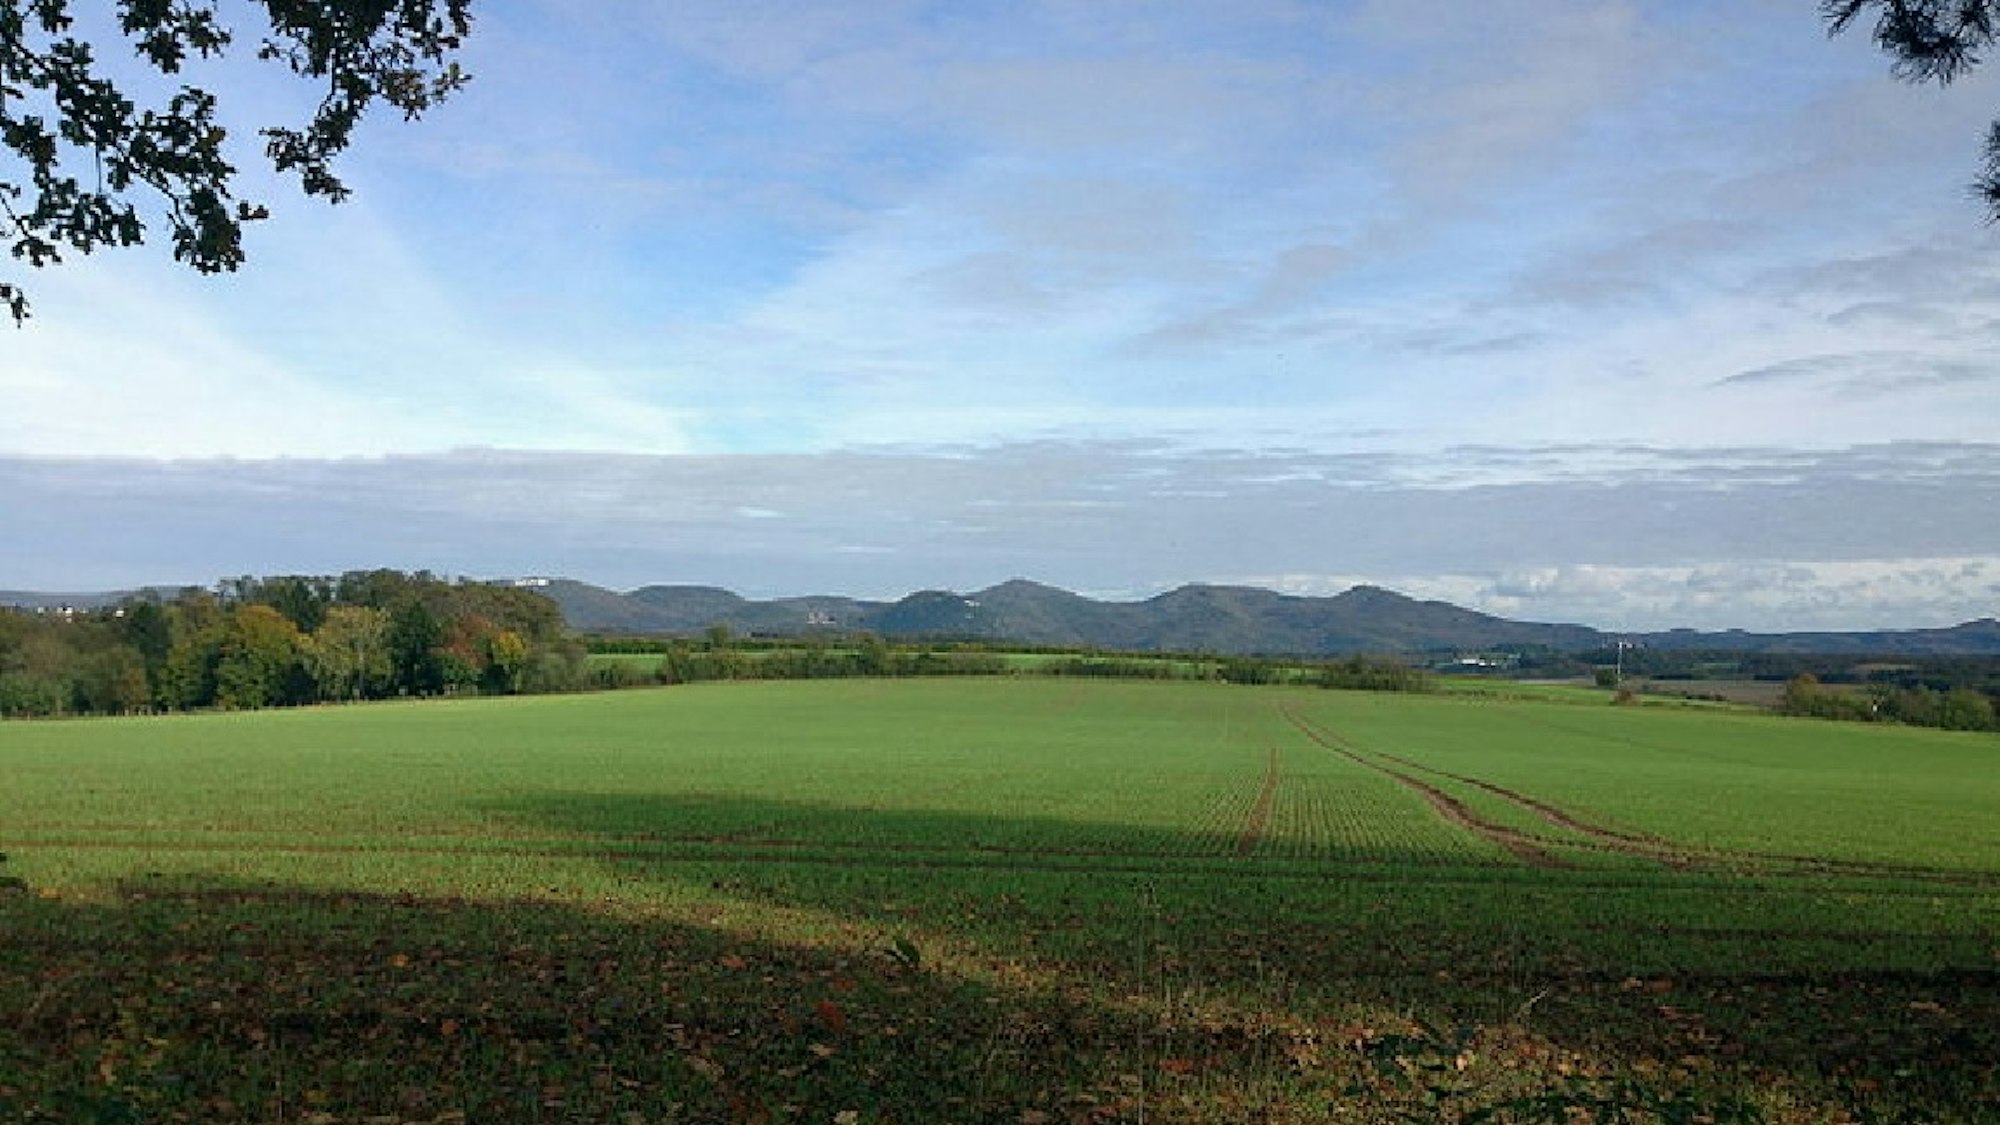 Blick auf ein grünes Feld, Berge im Hintergrund